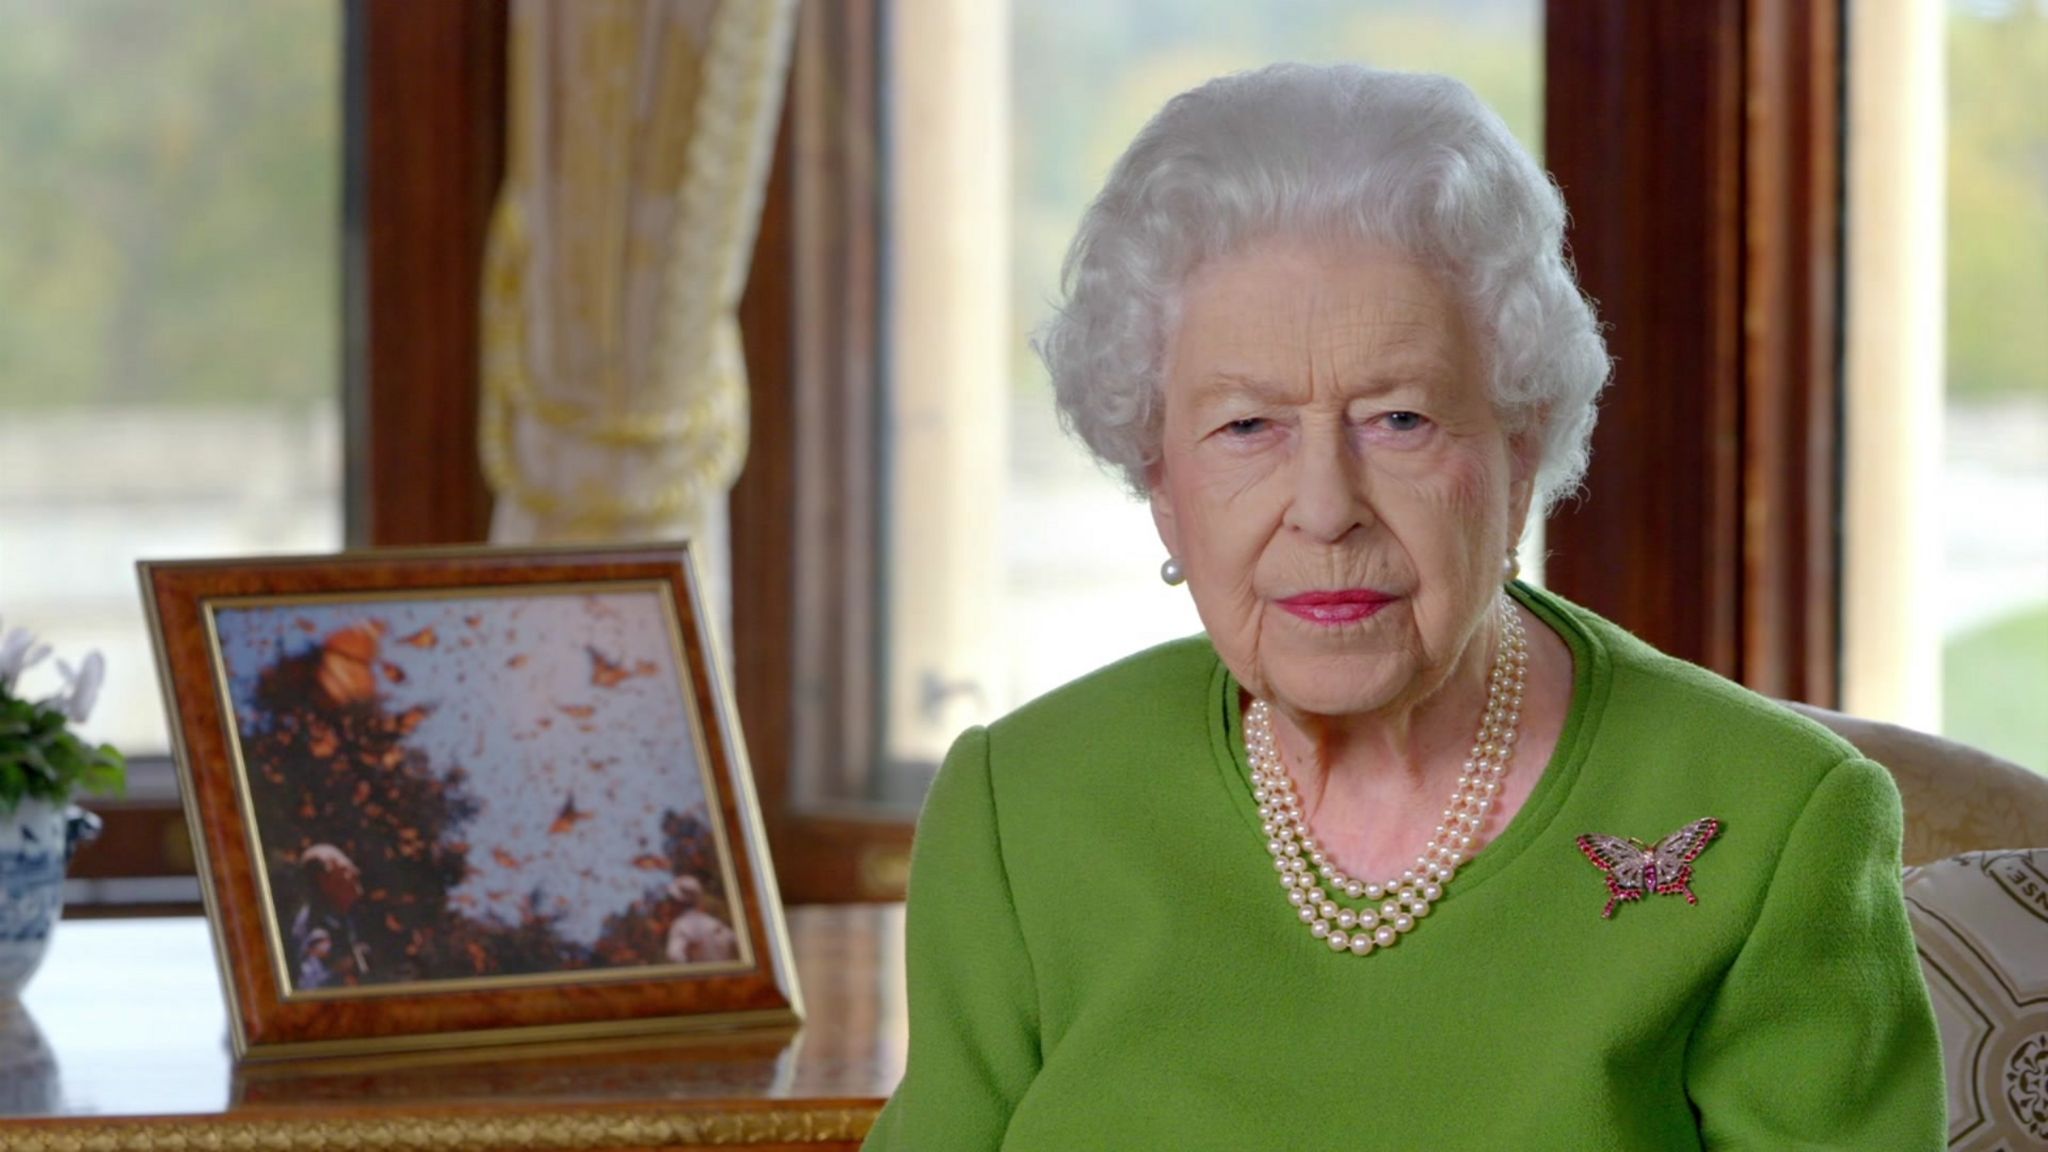 The Queen addresses COP26